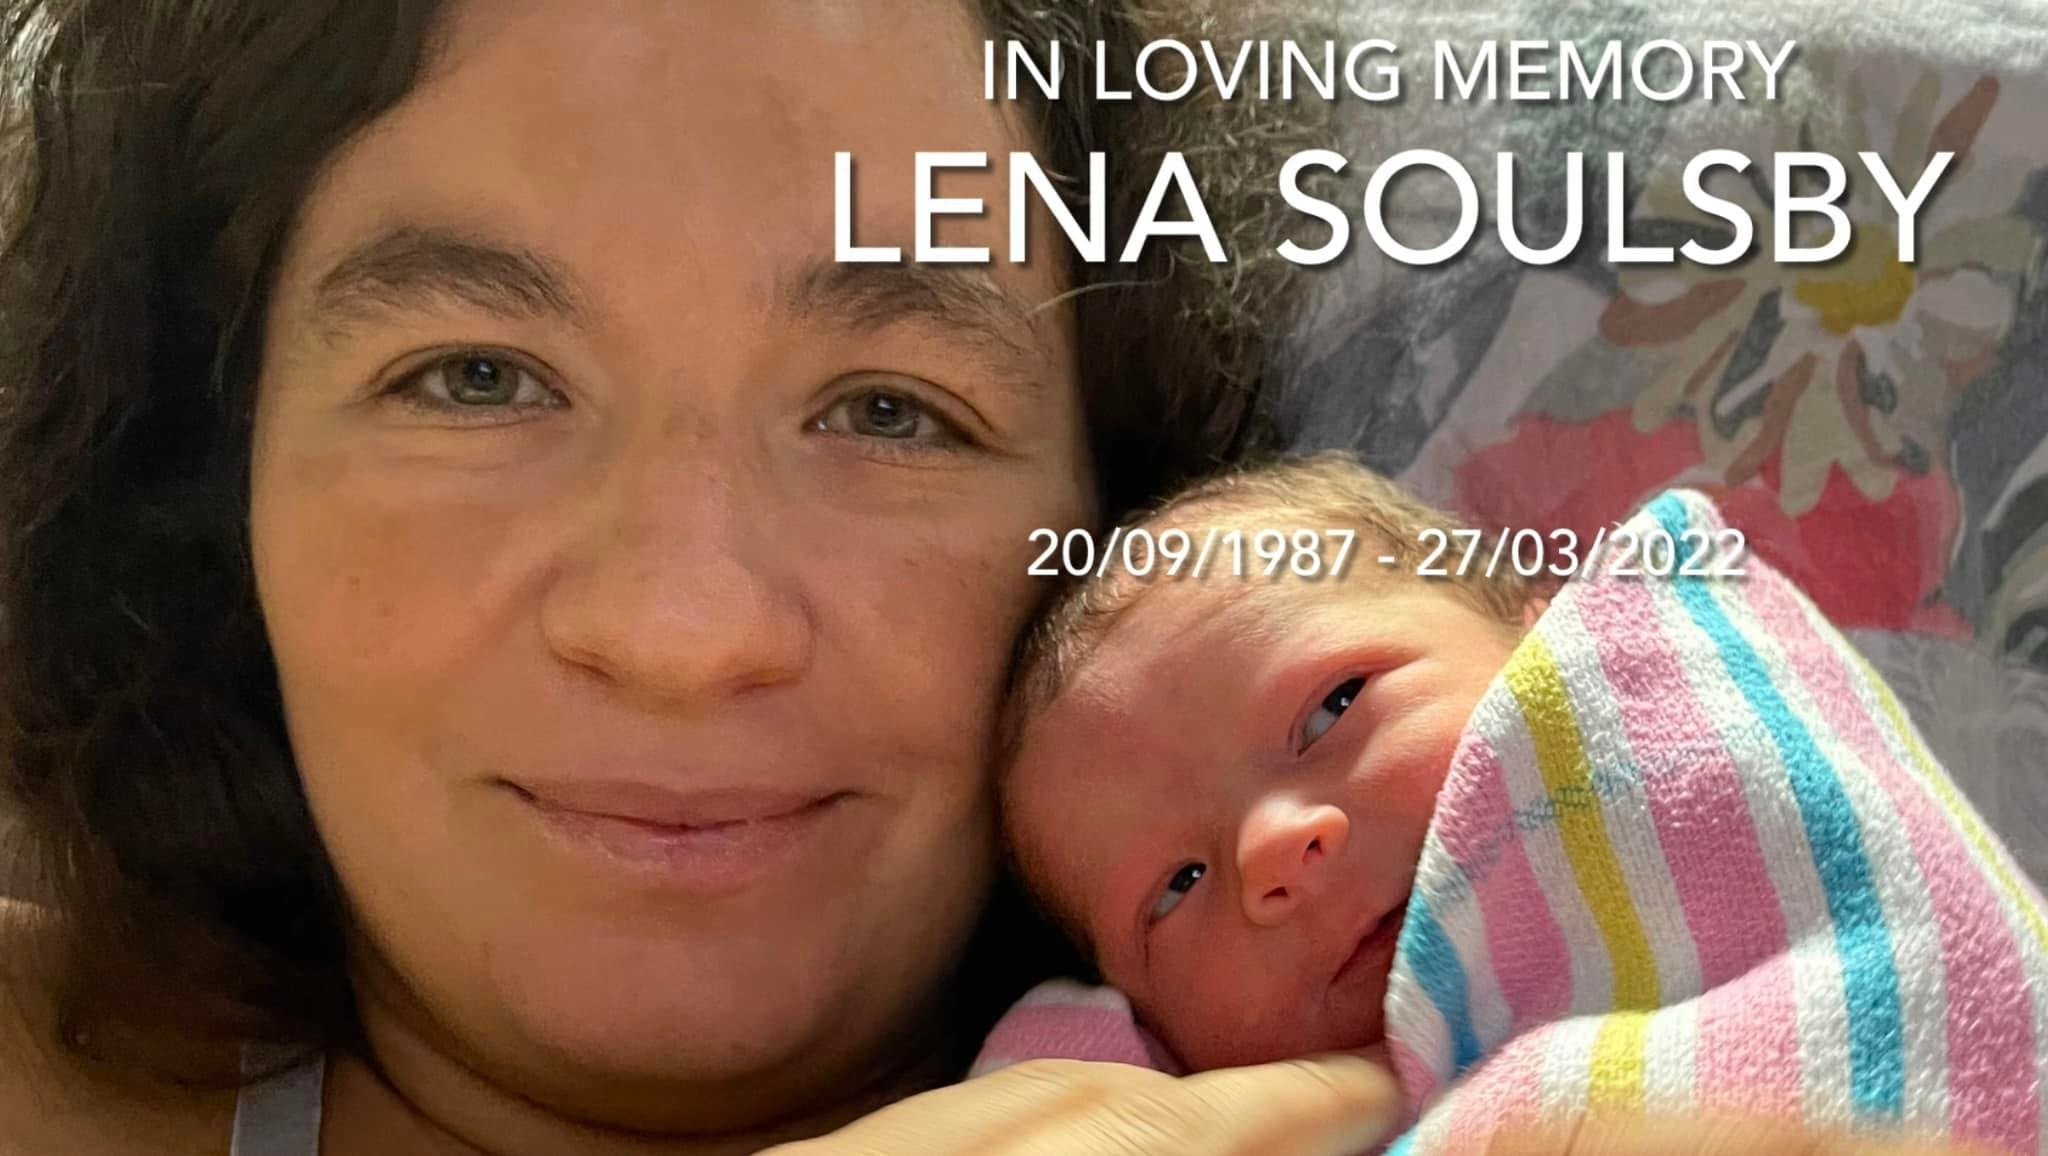 Lena decidiu evitar remédios fortes para poder amamentar a filha caçula (Foto: Reprodução/Facebook/Rob Lena Soulsby)